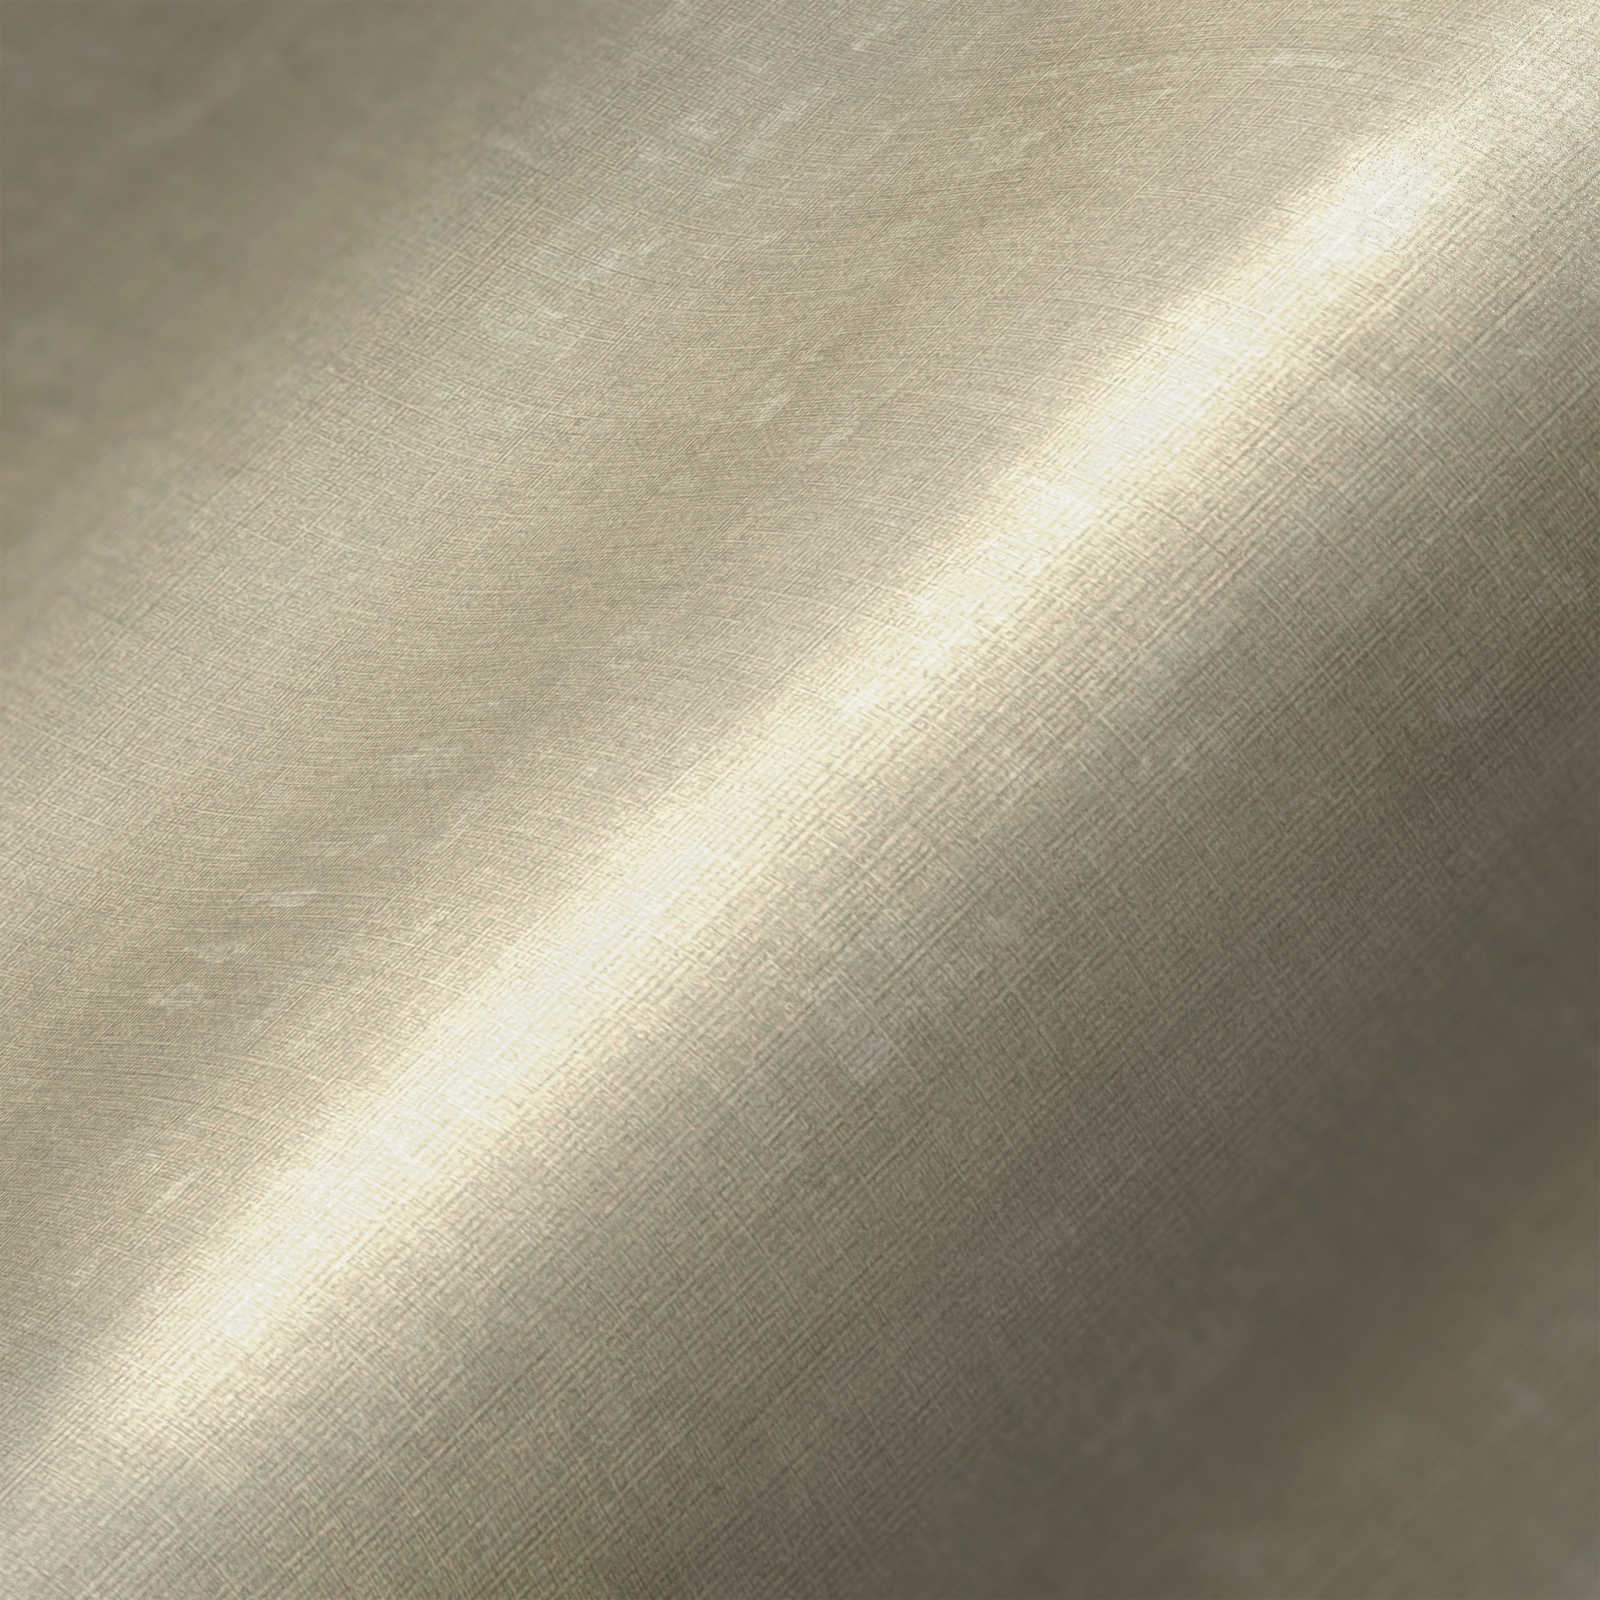             Papel pintado no tejido liso con efecto texturizado - gris, beige
        